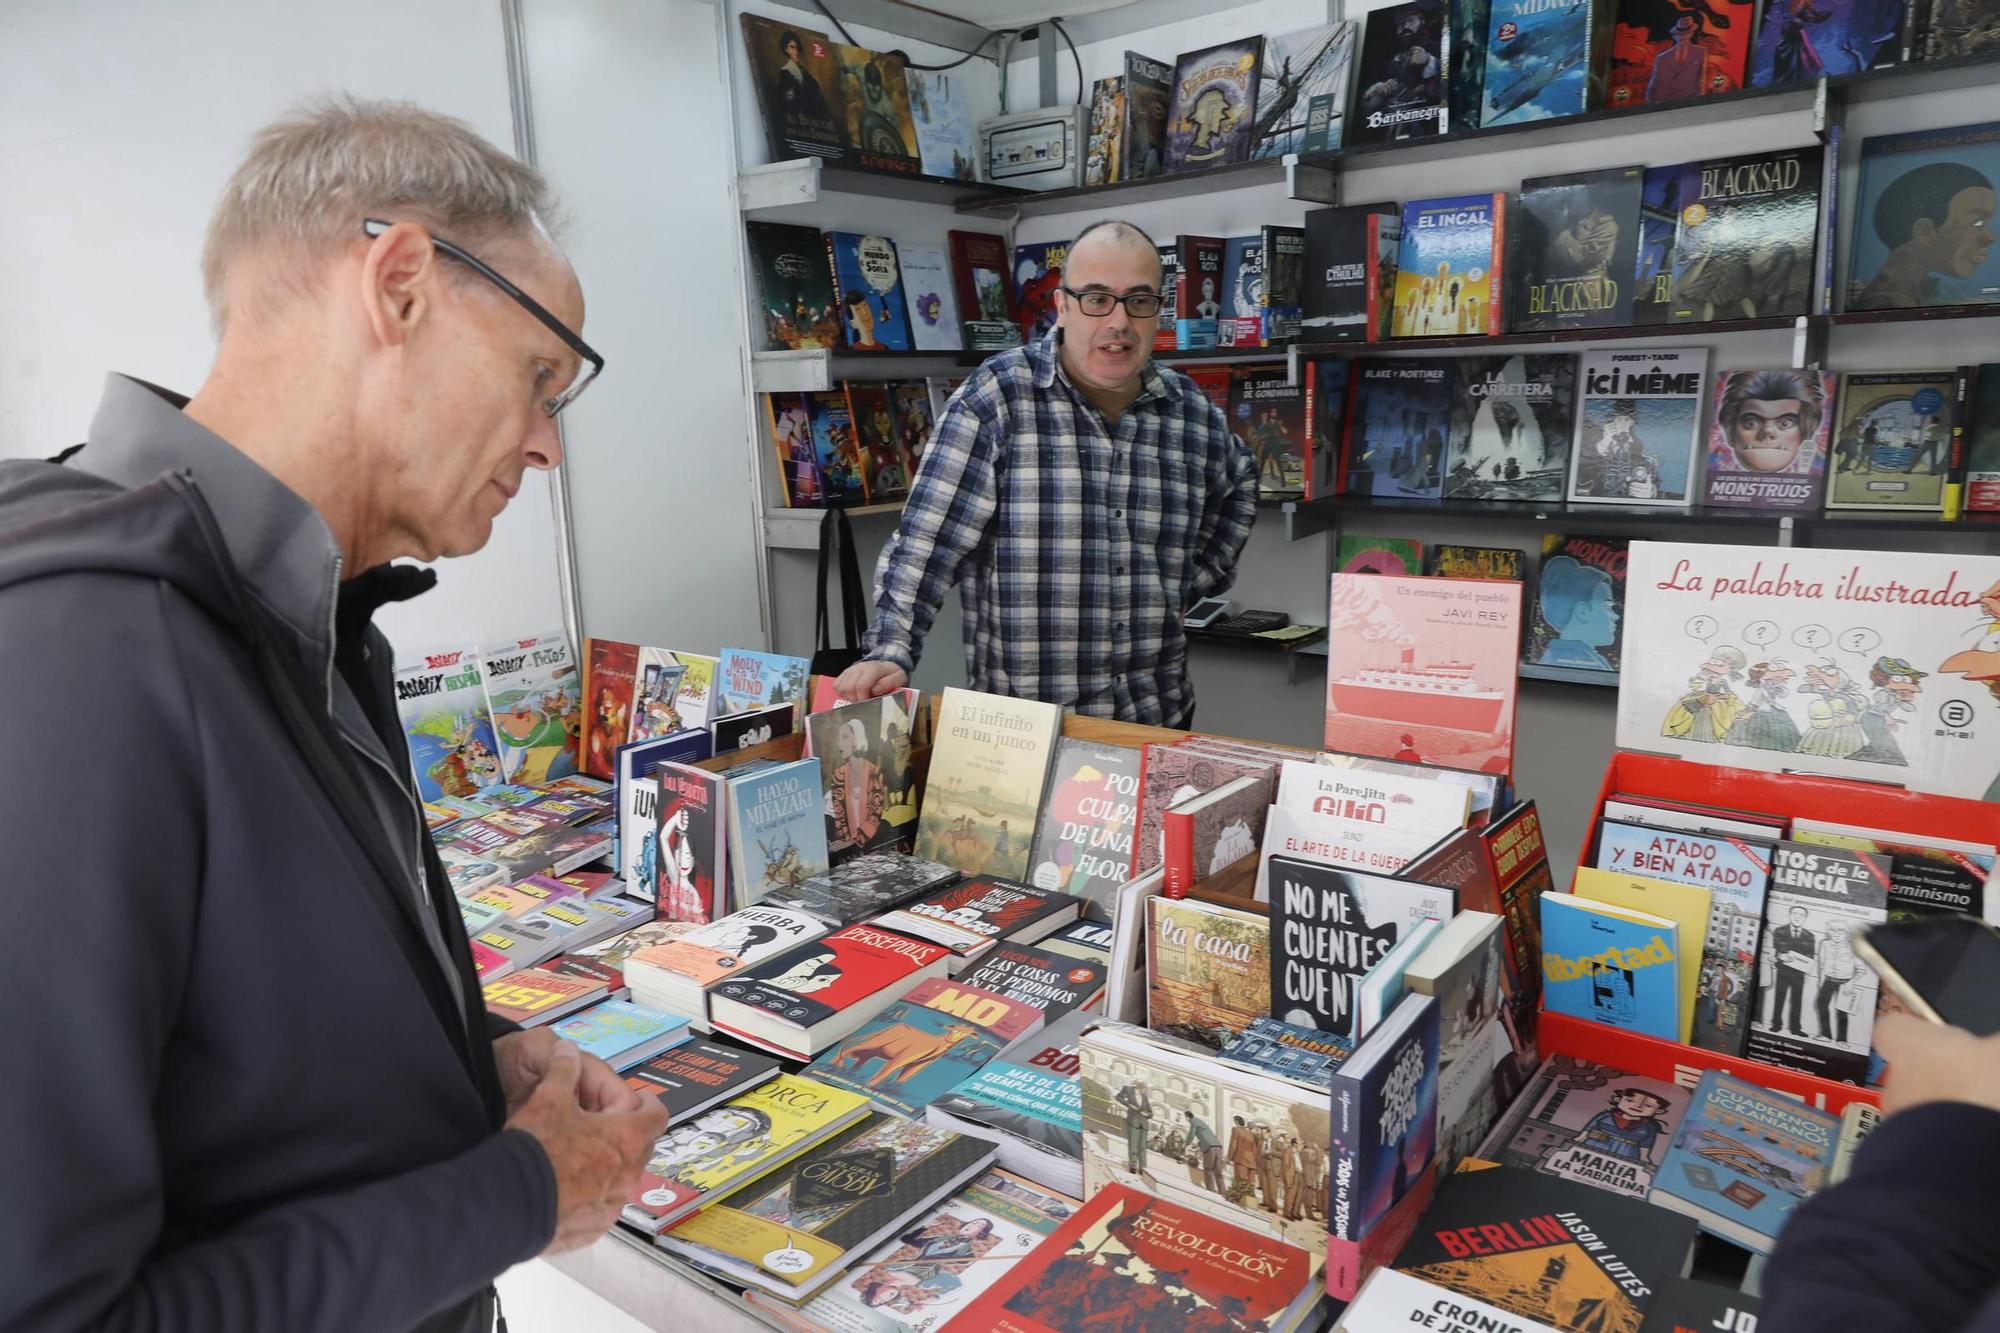 La Feria del Libro de Gijón se pone en marcha (en imágenes)